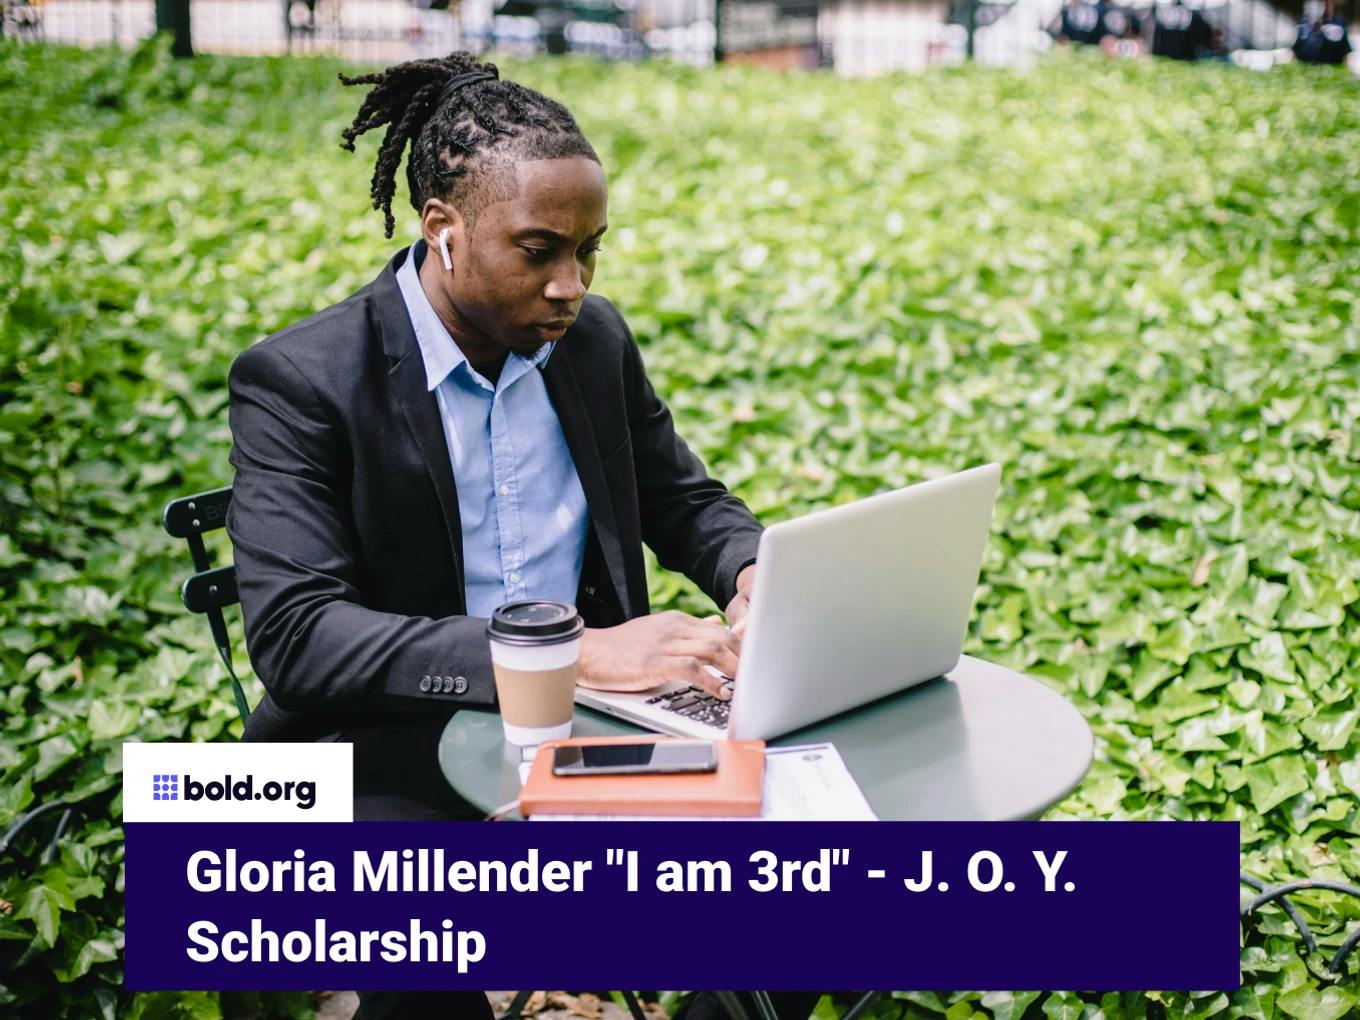 Gloria Millender "I am 3rd" - J. O. Y. Scholarship